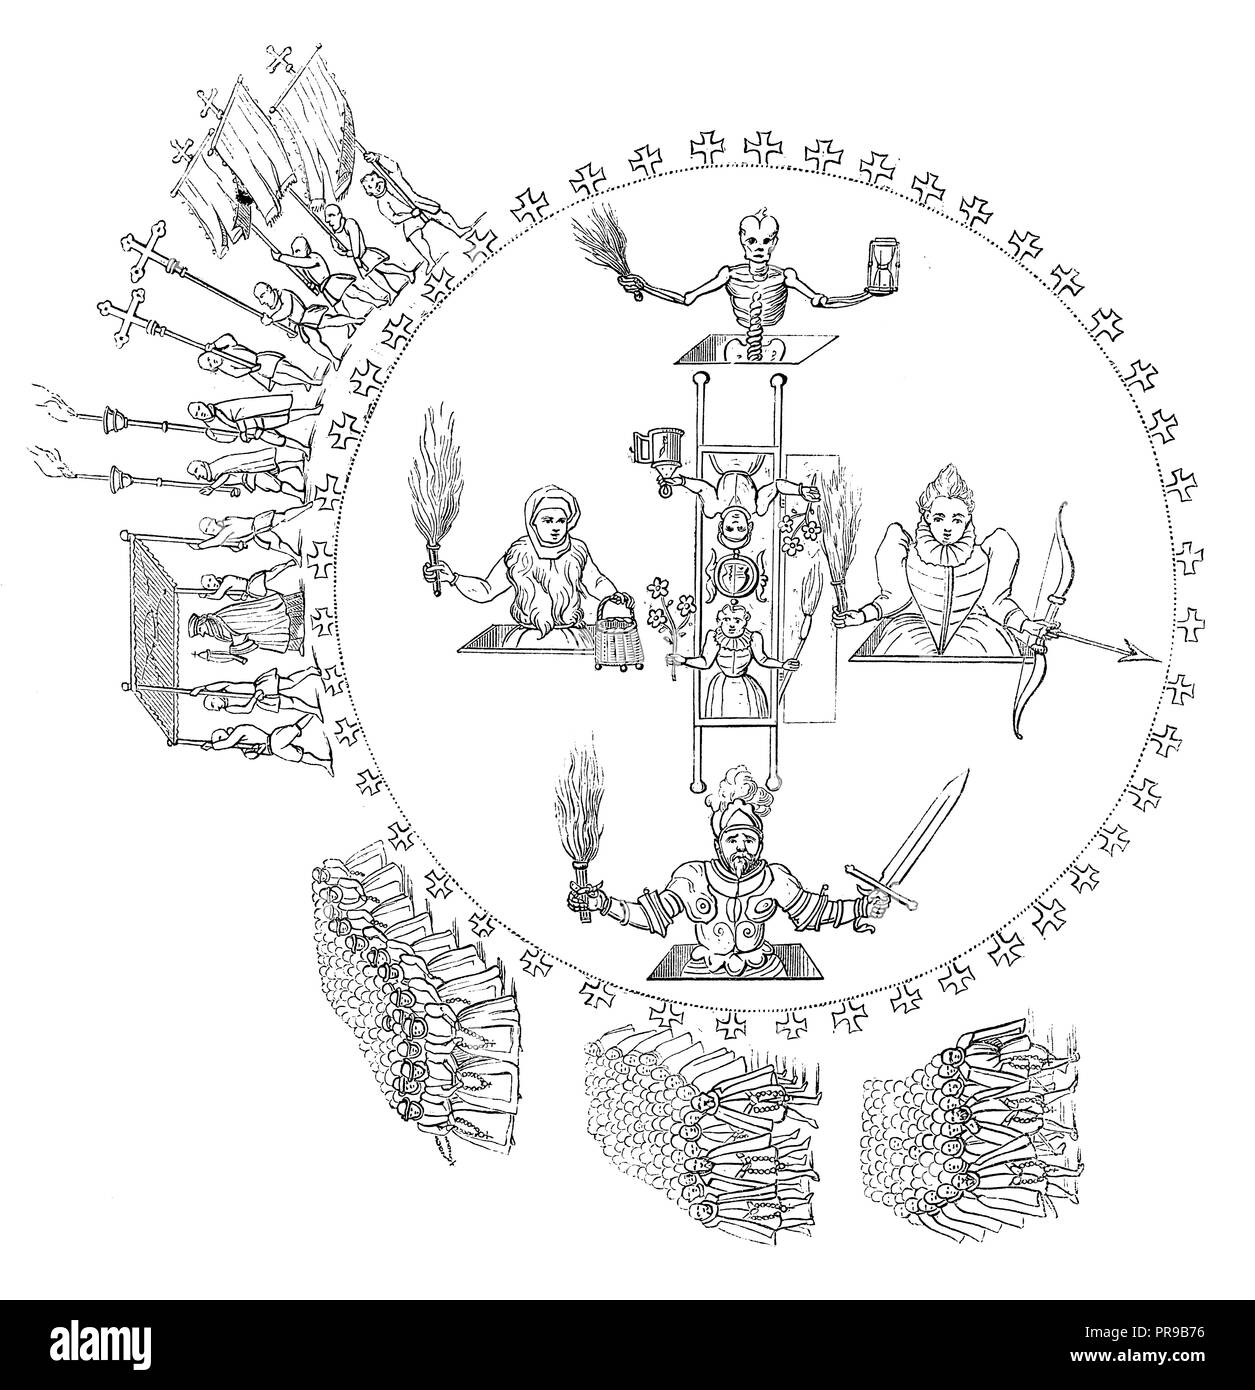 Xix secolo illustrazione del cerchio magico via da un mago alsaziano nel 1601. Illustrazione originale pubblicato in Le magasin pittoresco da M. A. Lac Foto Stock